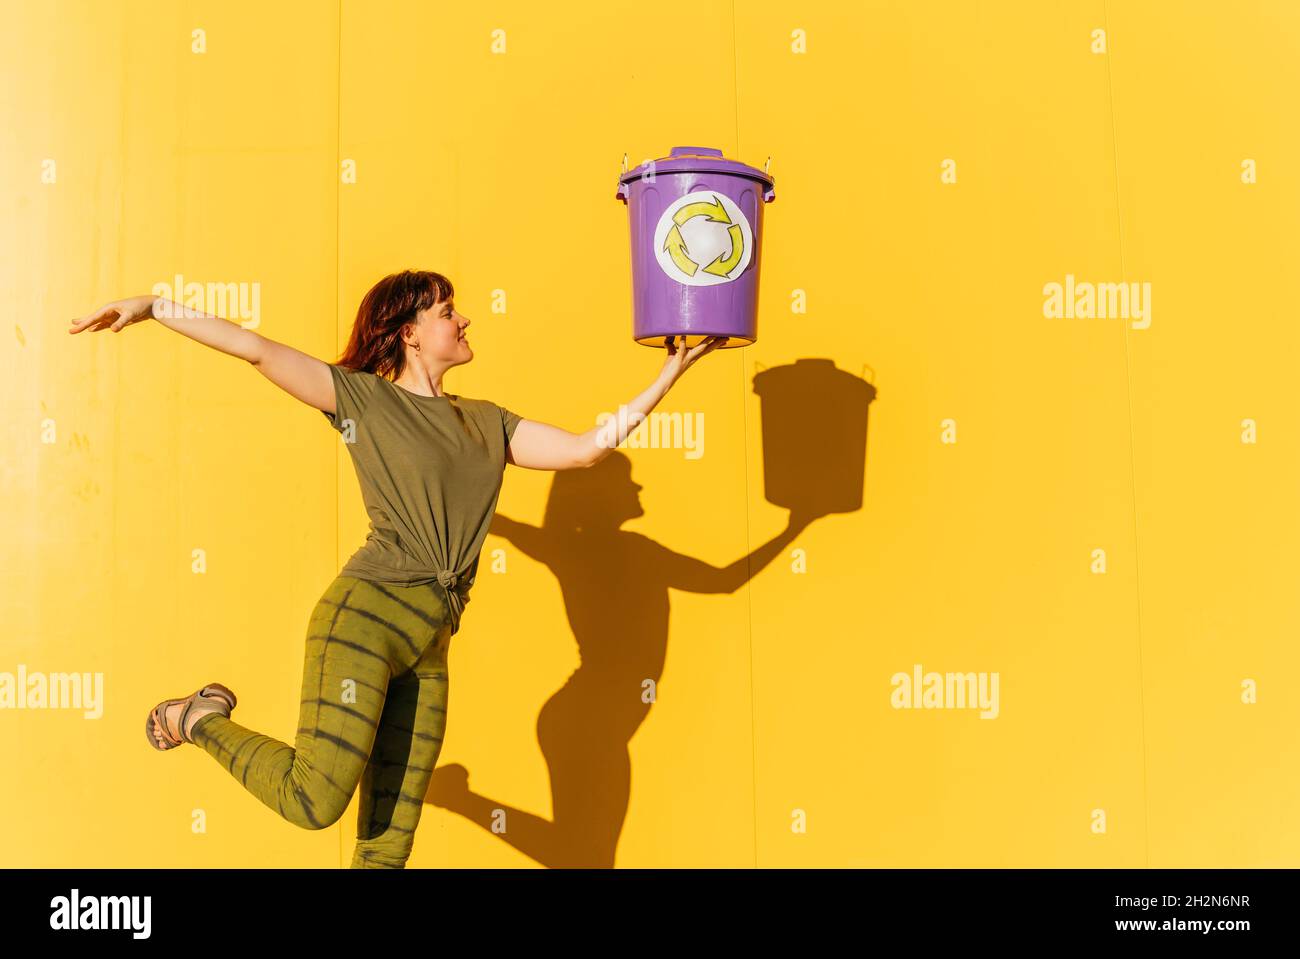 Frau mit mittlerem Erwachsenen, die den Abfalleimer in der Hand hält, während sie auf einem Bein vor der gelben Wand steht Stockfoto